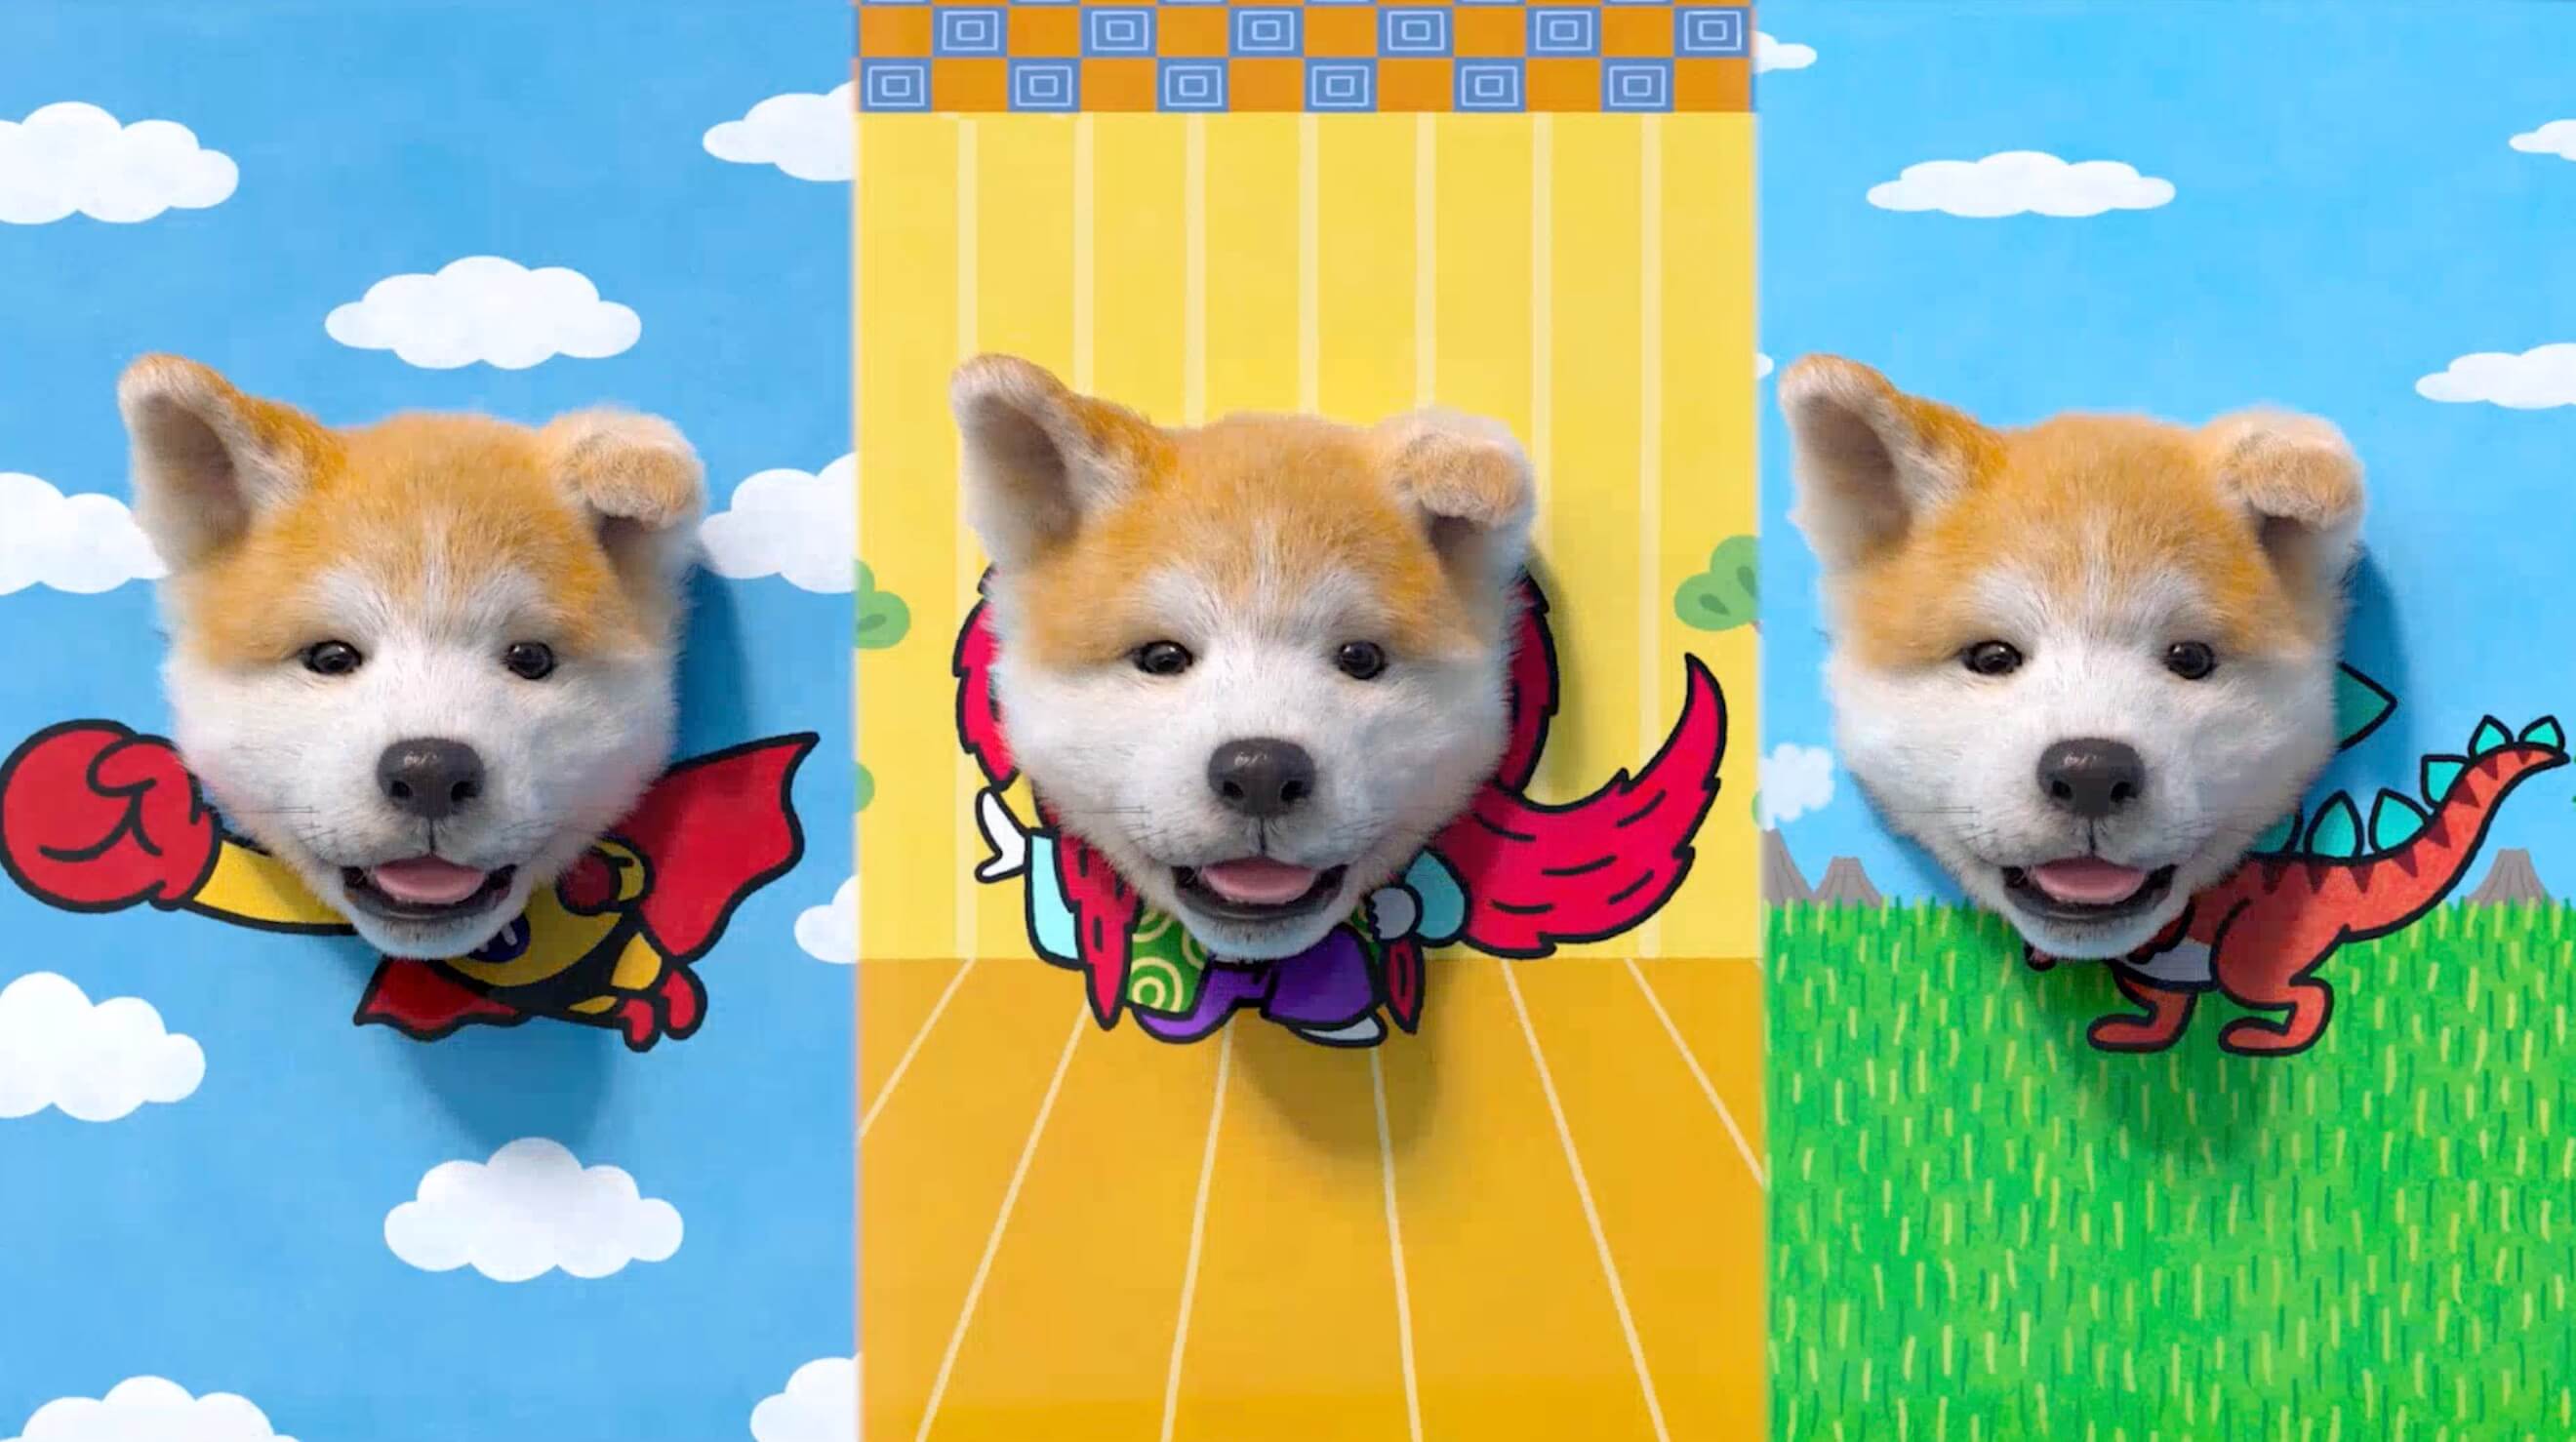  “肉眼3D”で飛び出す秋田犬広告動画